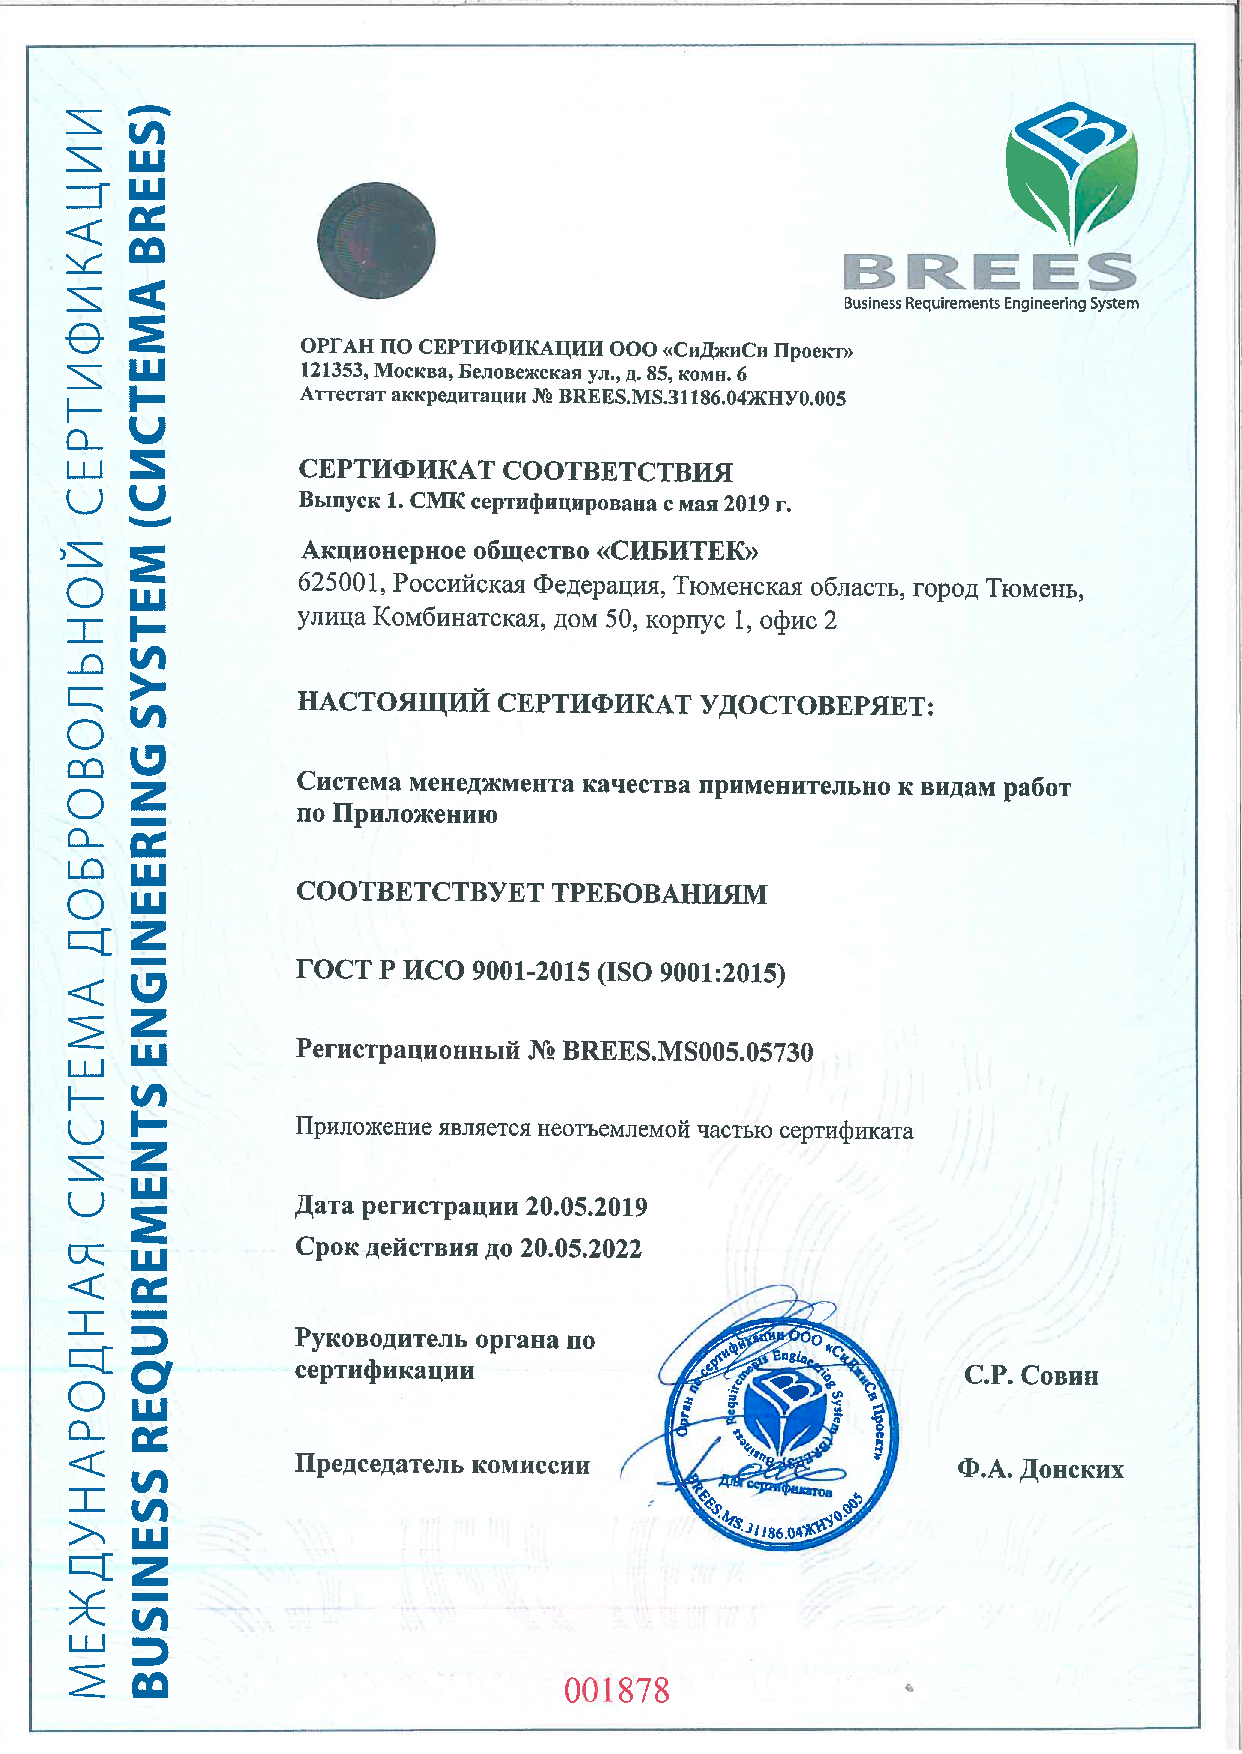 Сертификат соответствия №BREES.MS005.05730